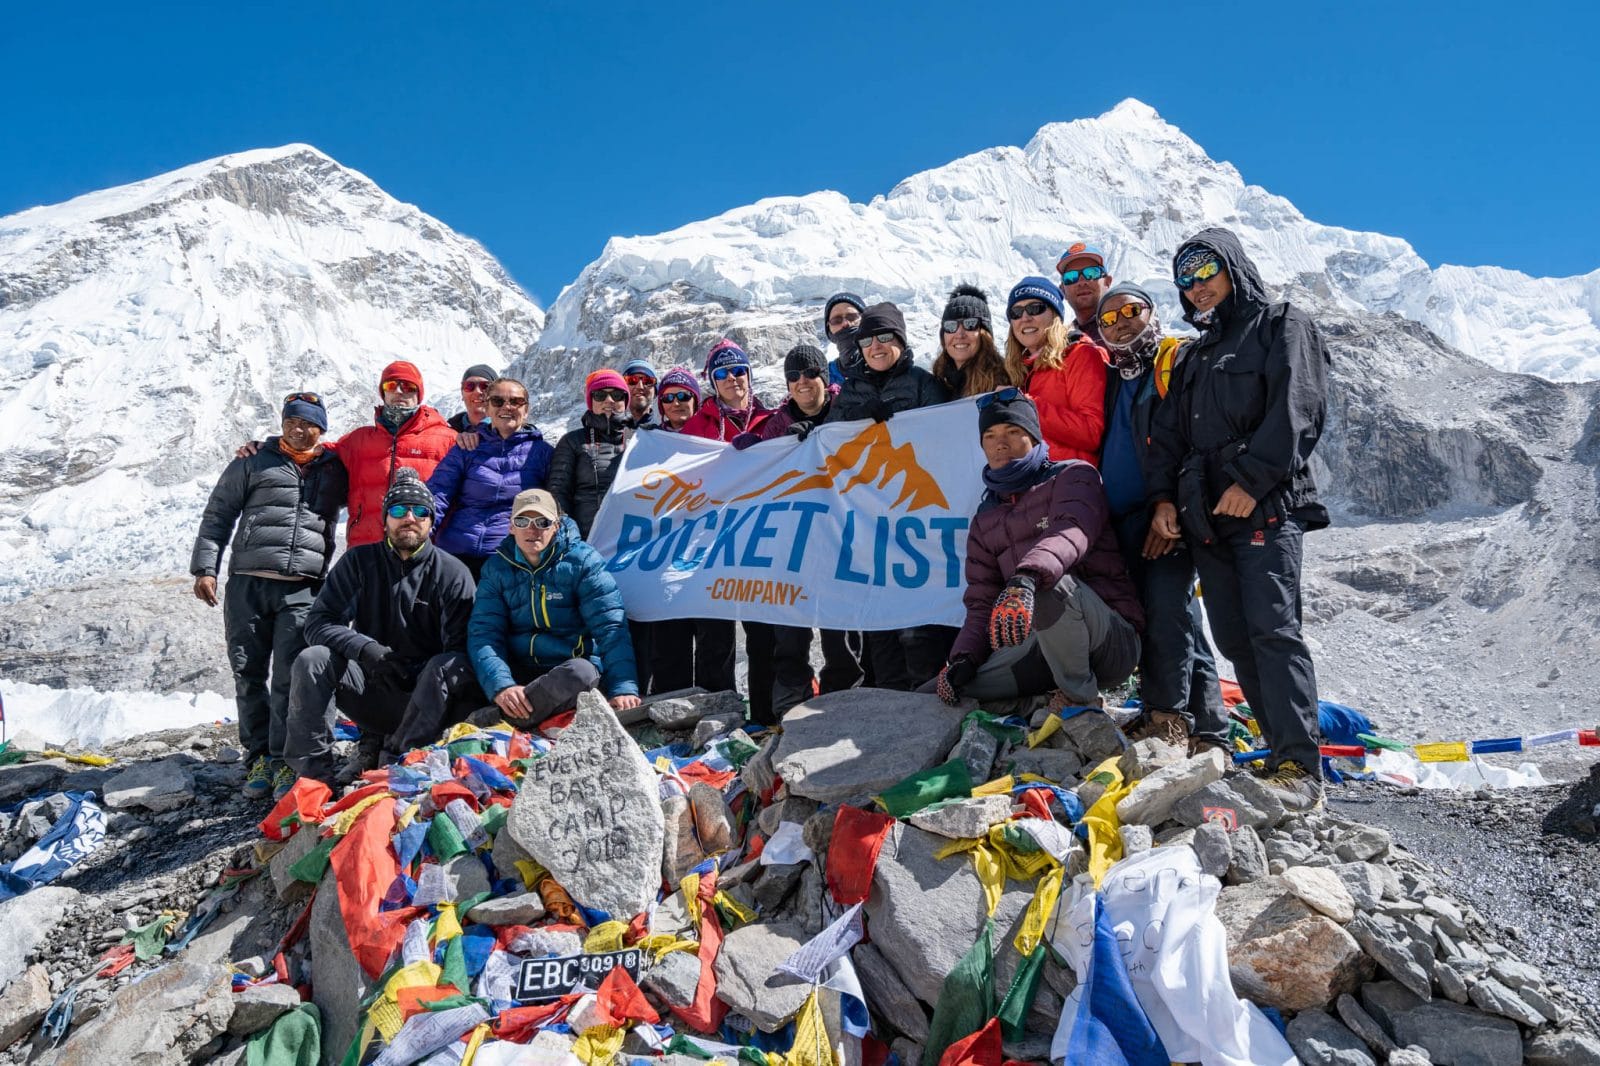 October 2018 group at Everest Base Camp